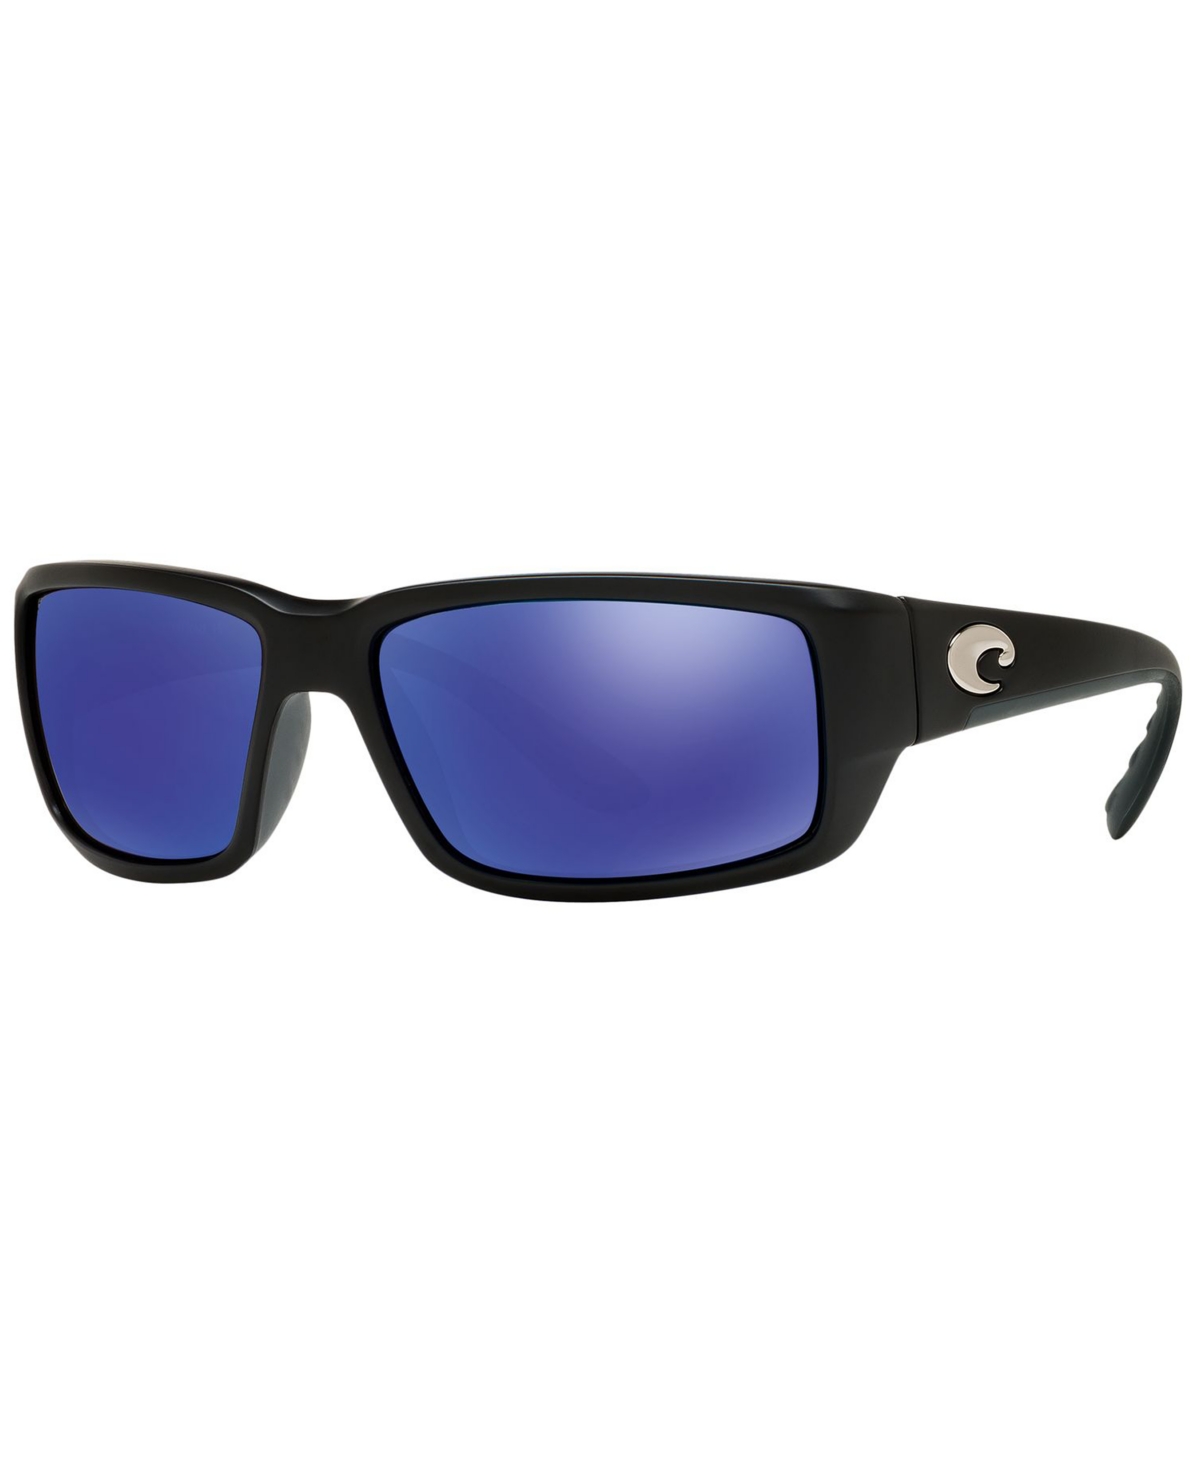 Costa Del Mar Polarized Sunglasses, Fantail 59P